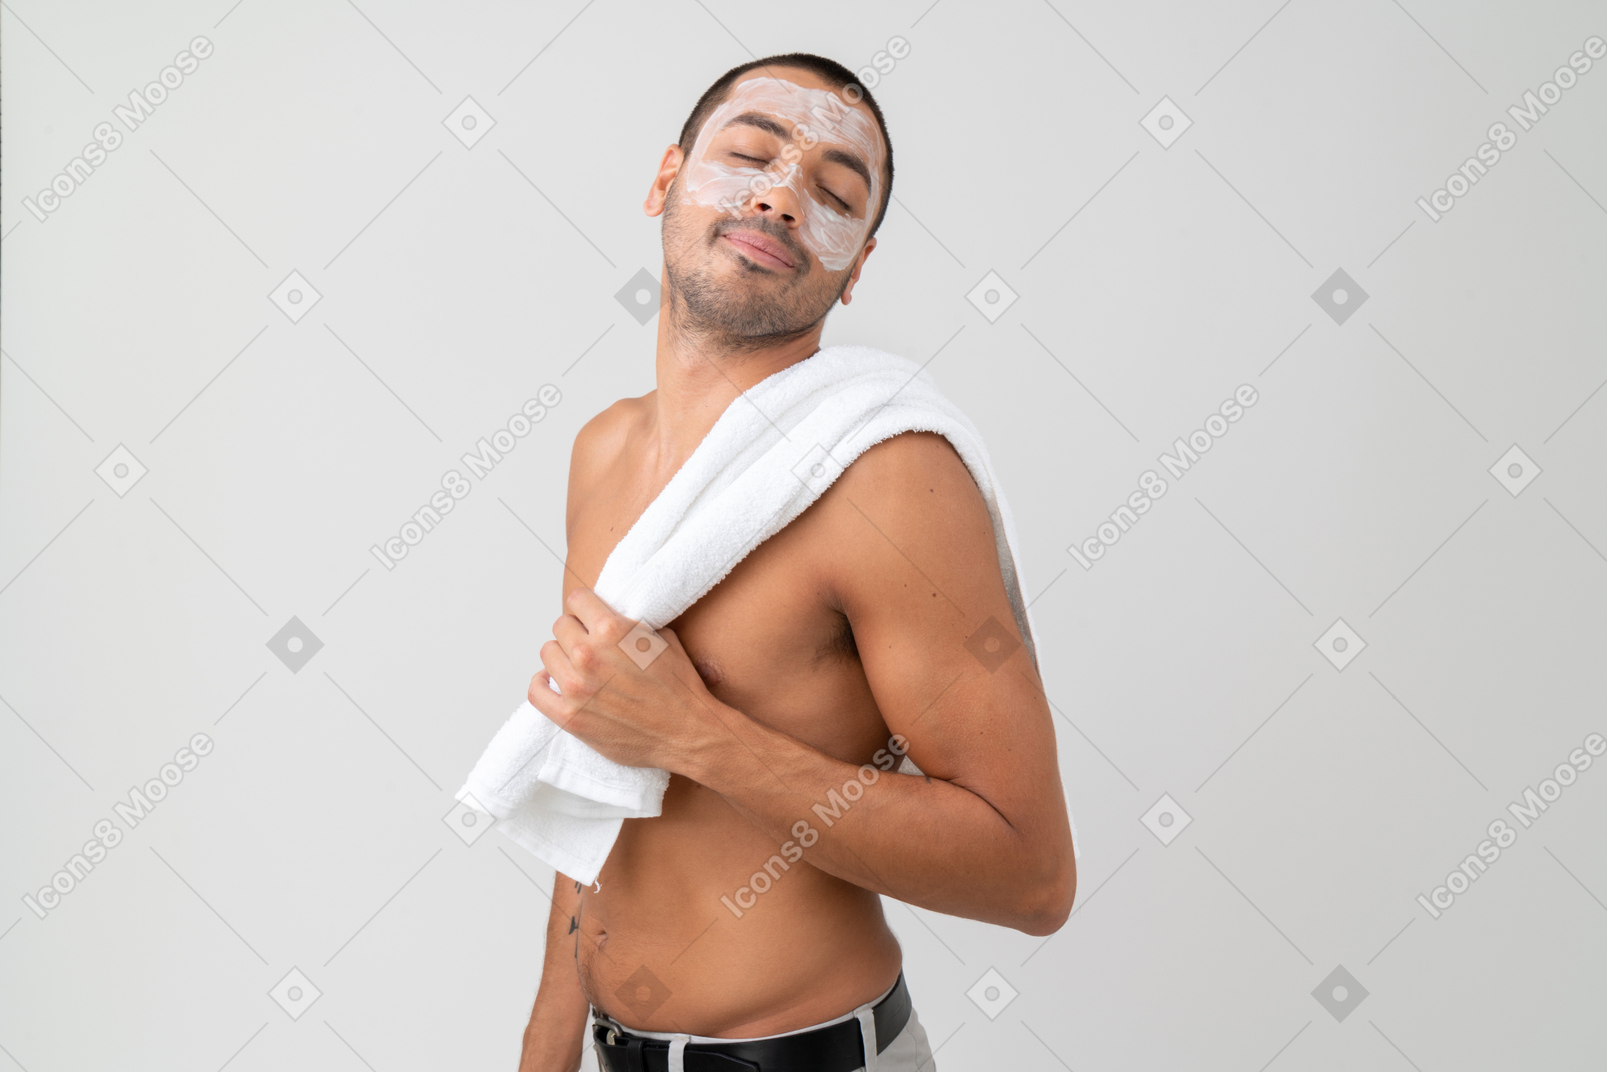 парень голый в полотенце фото